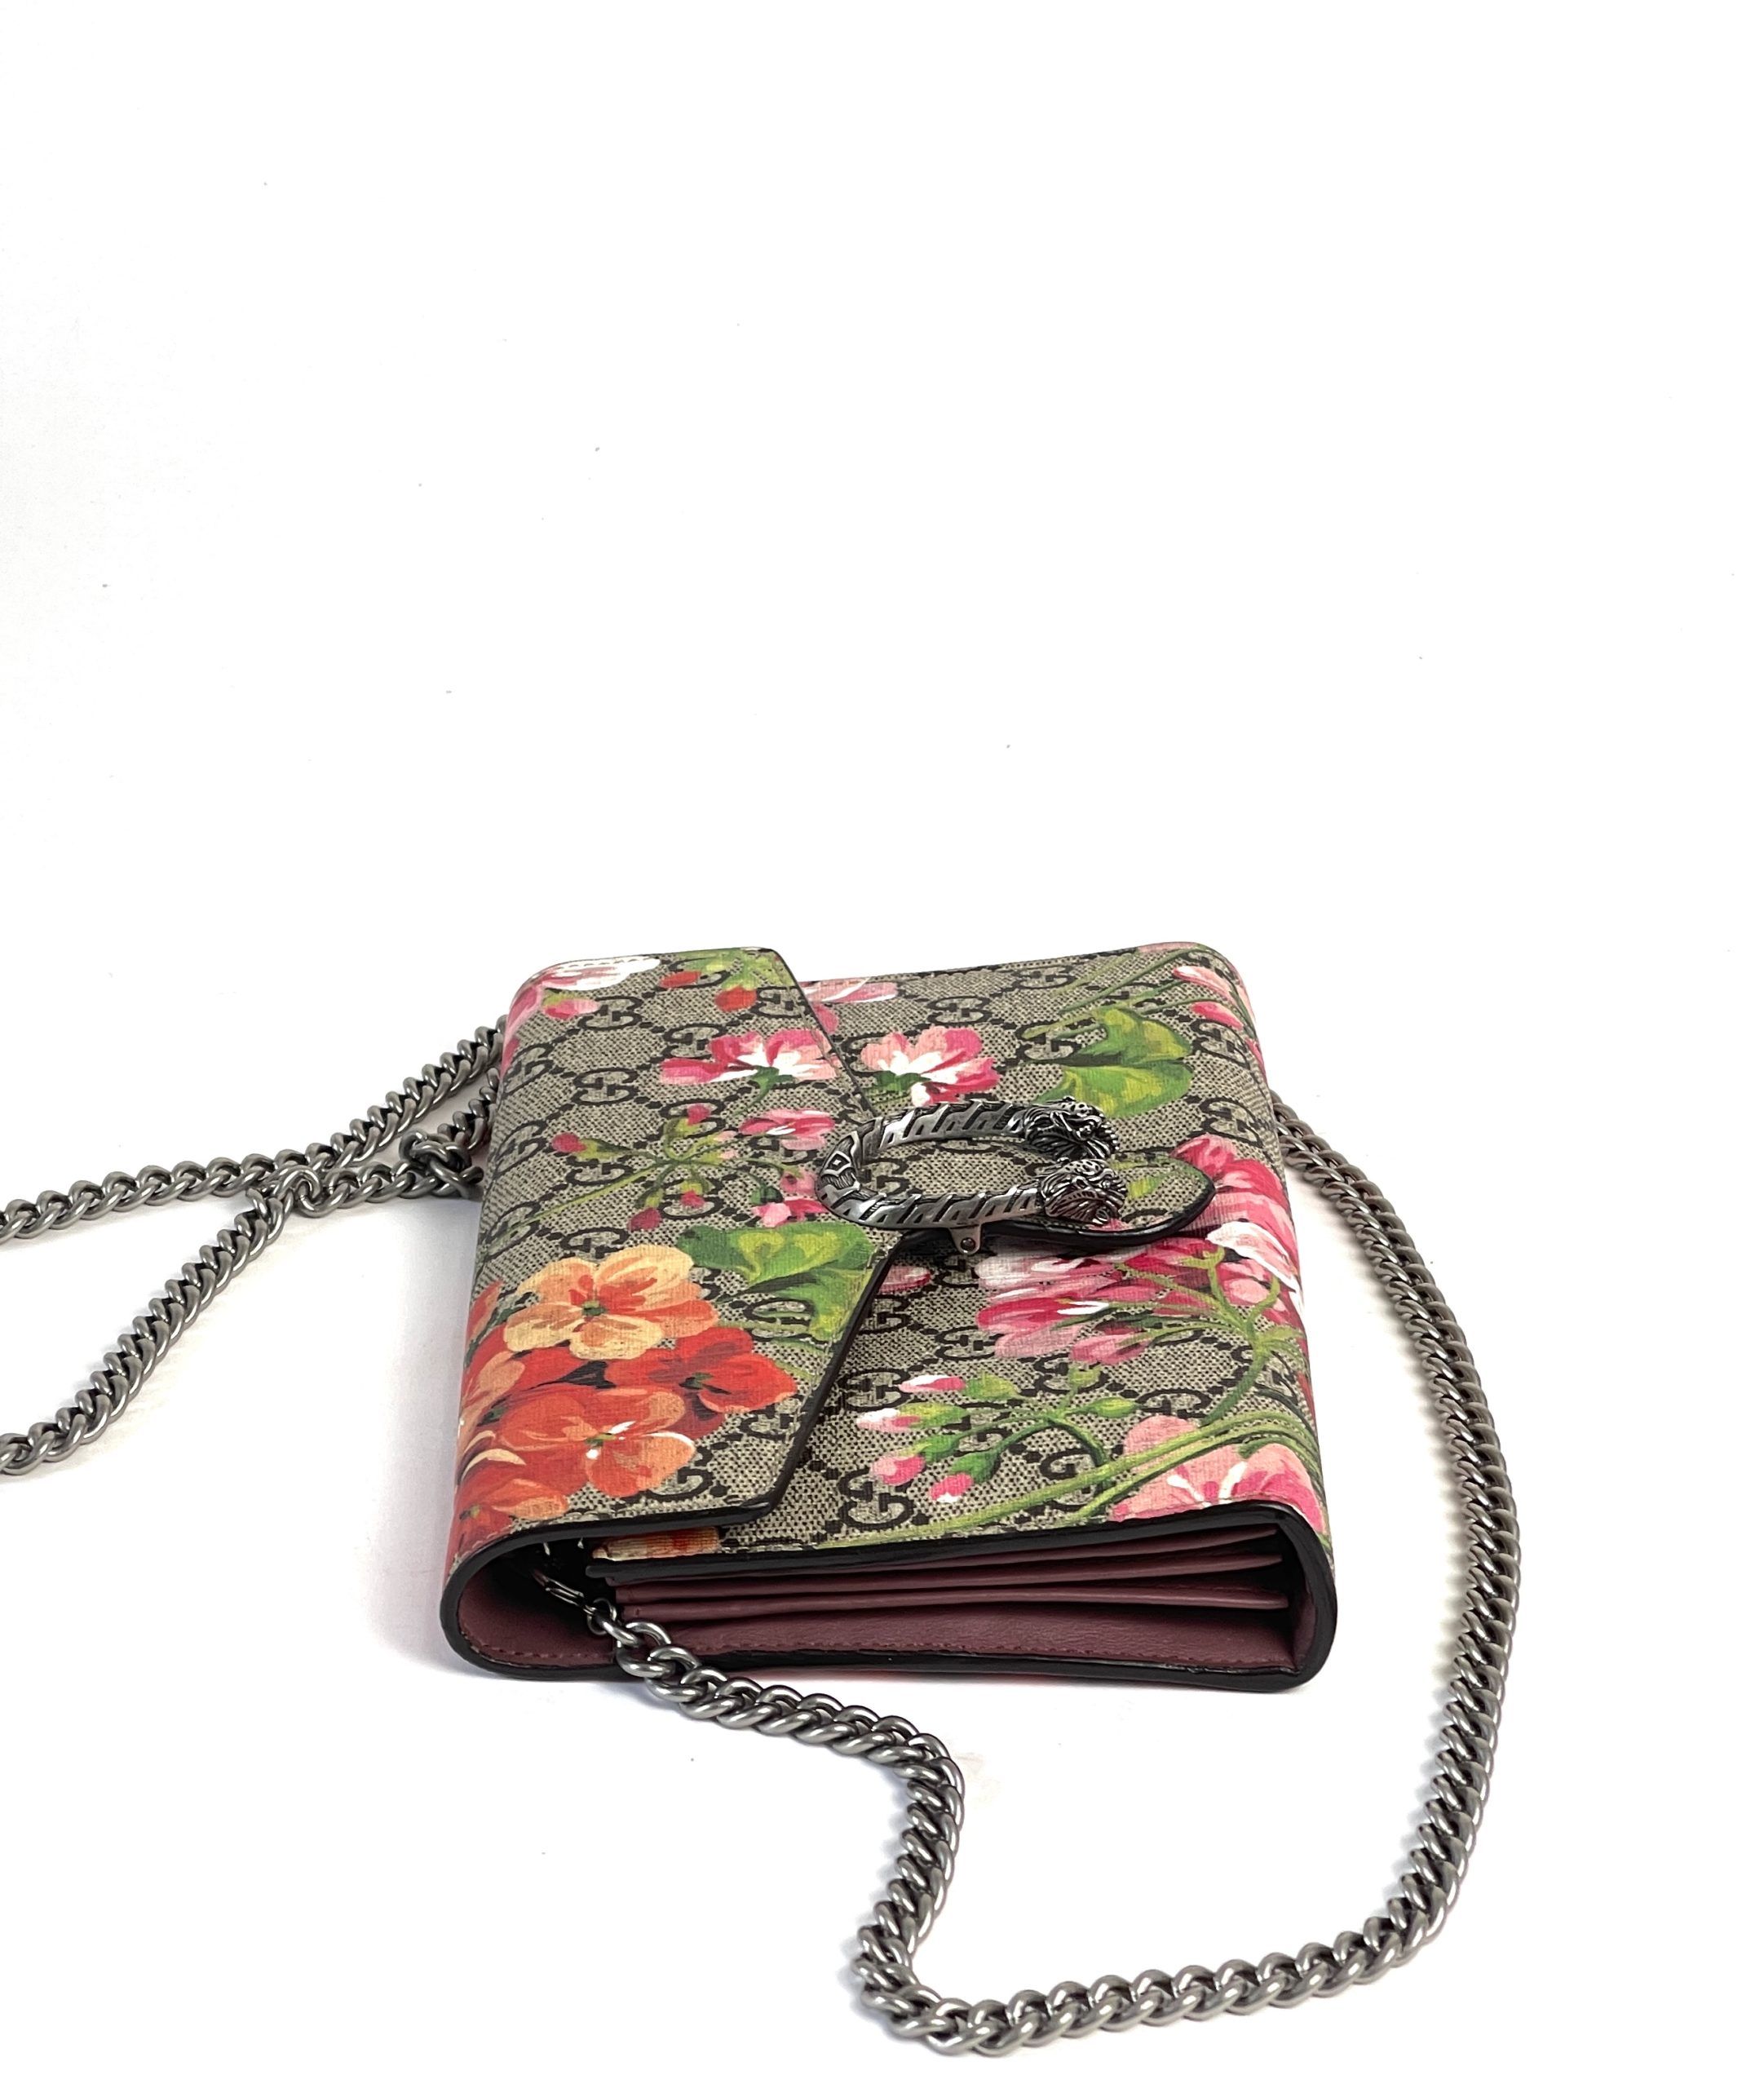 Dionysus Mini GG Canvas Tote Bag in Multicoloured - Gucci